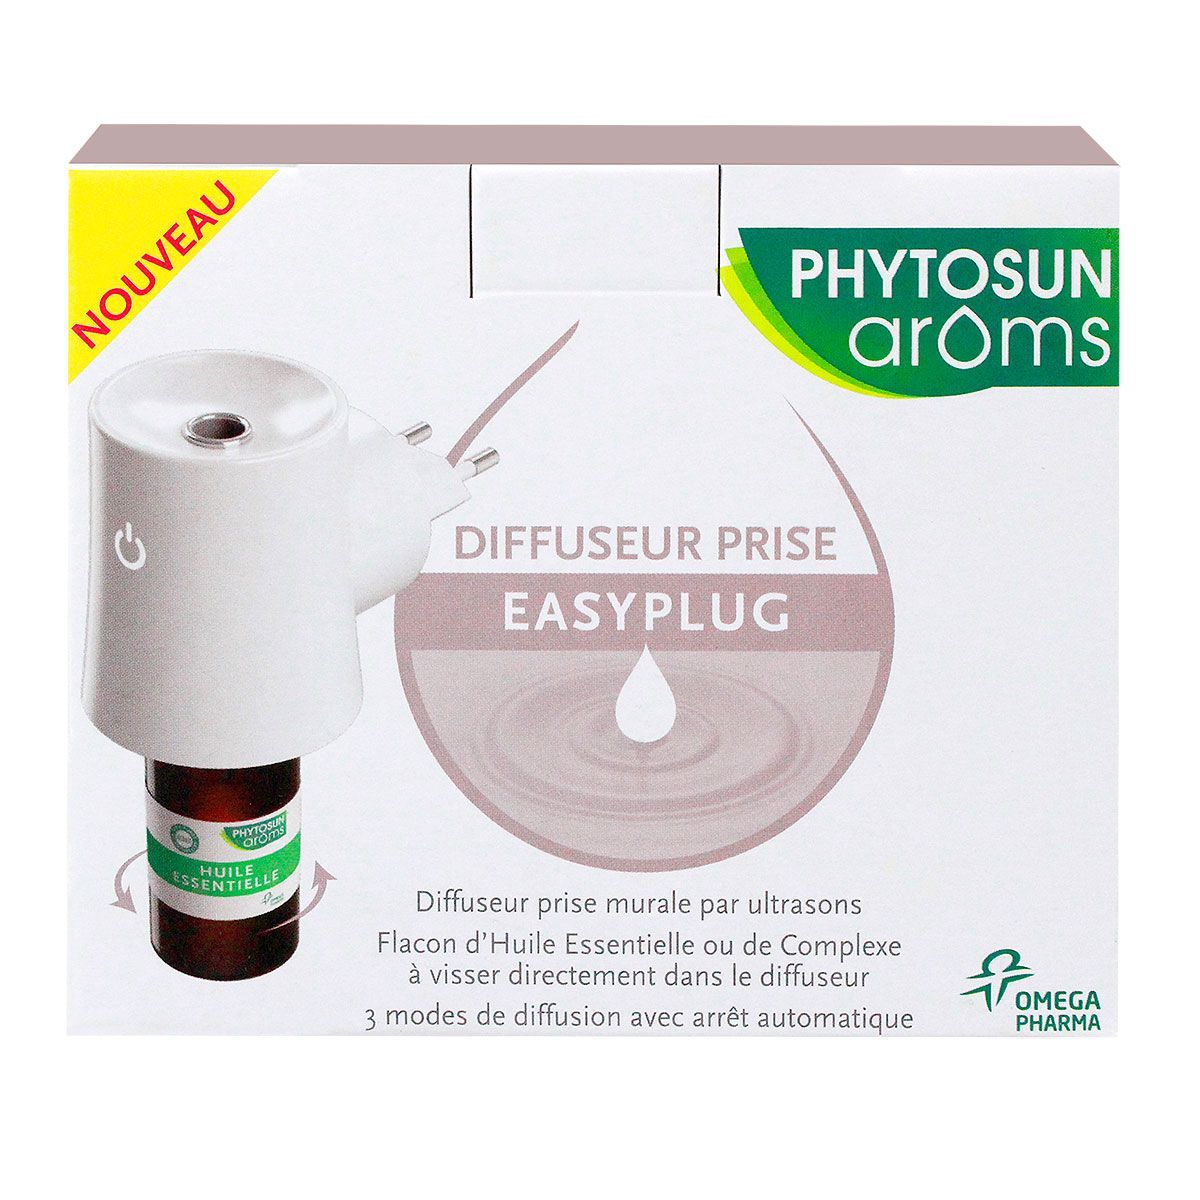 Ce Diffuseur Prise Phytosun Arôms est un diffuseur d'huiles essentielles  pour prise par ultrasons.